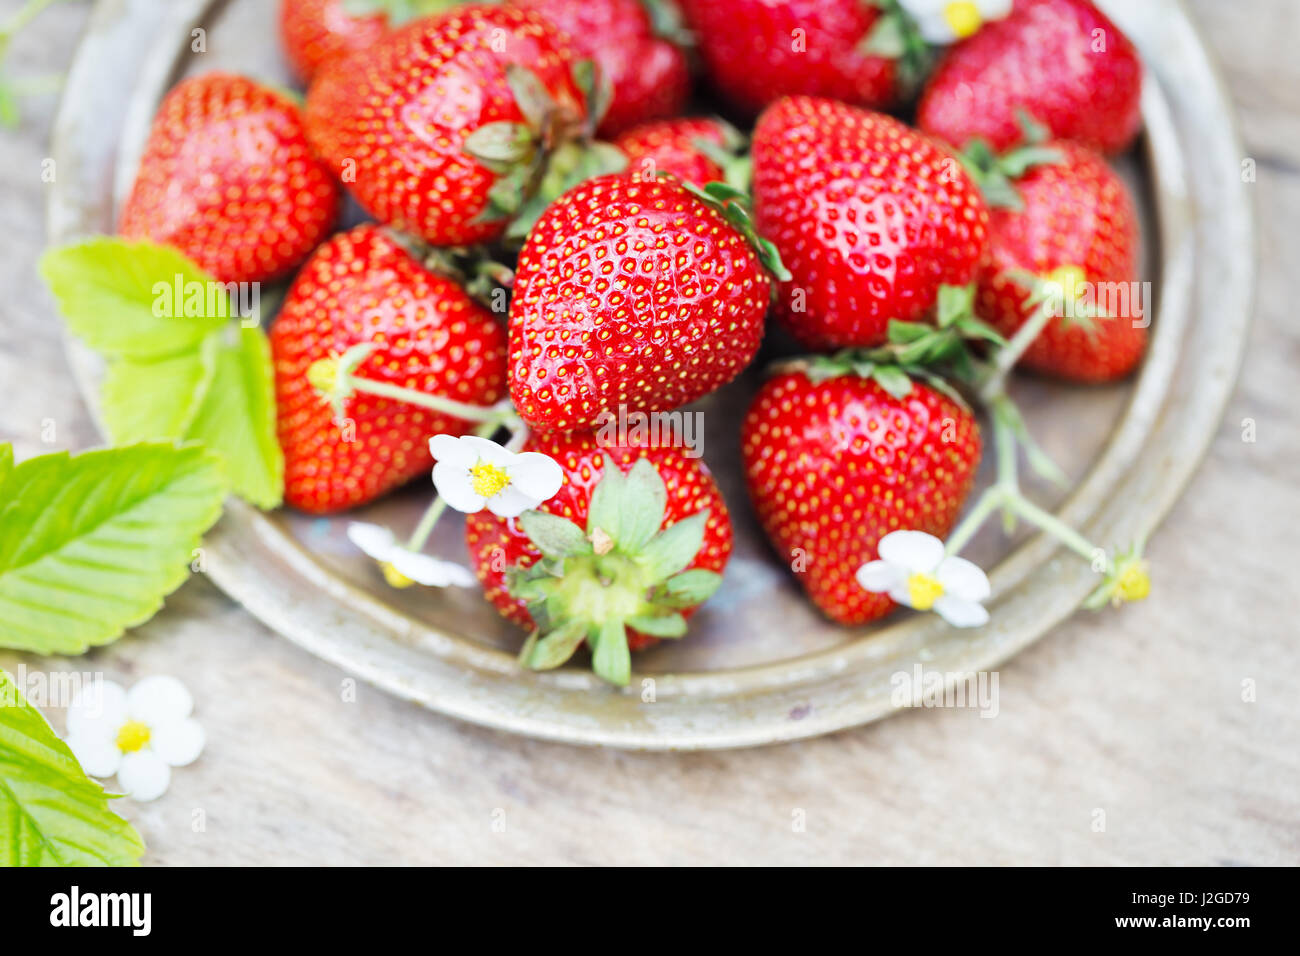 Perfekte süße reife Erdbeeren auf einem hölzernen Hintergrund Stockfoto